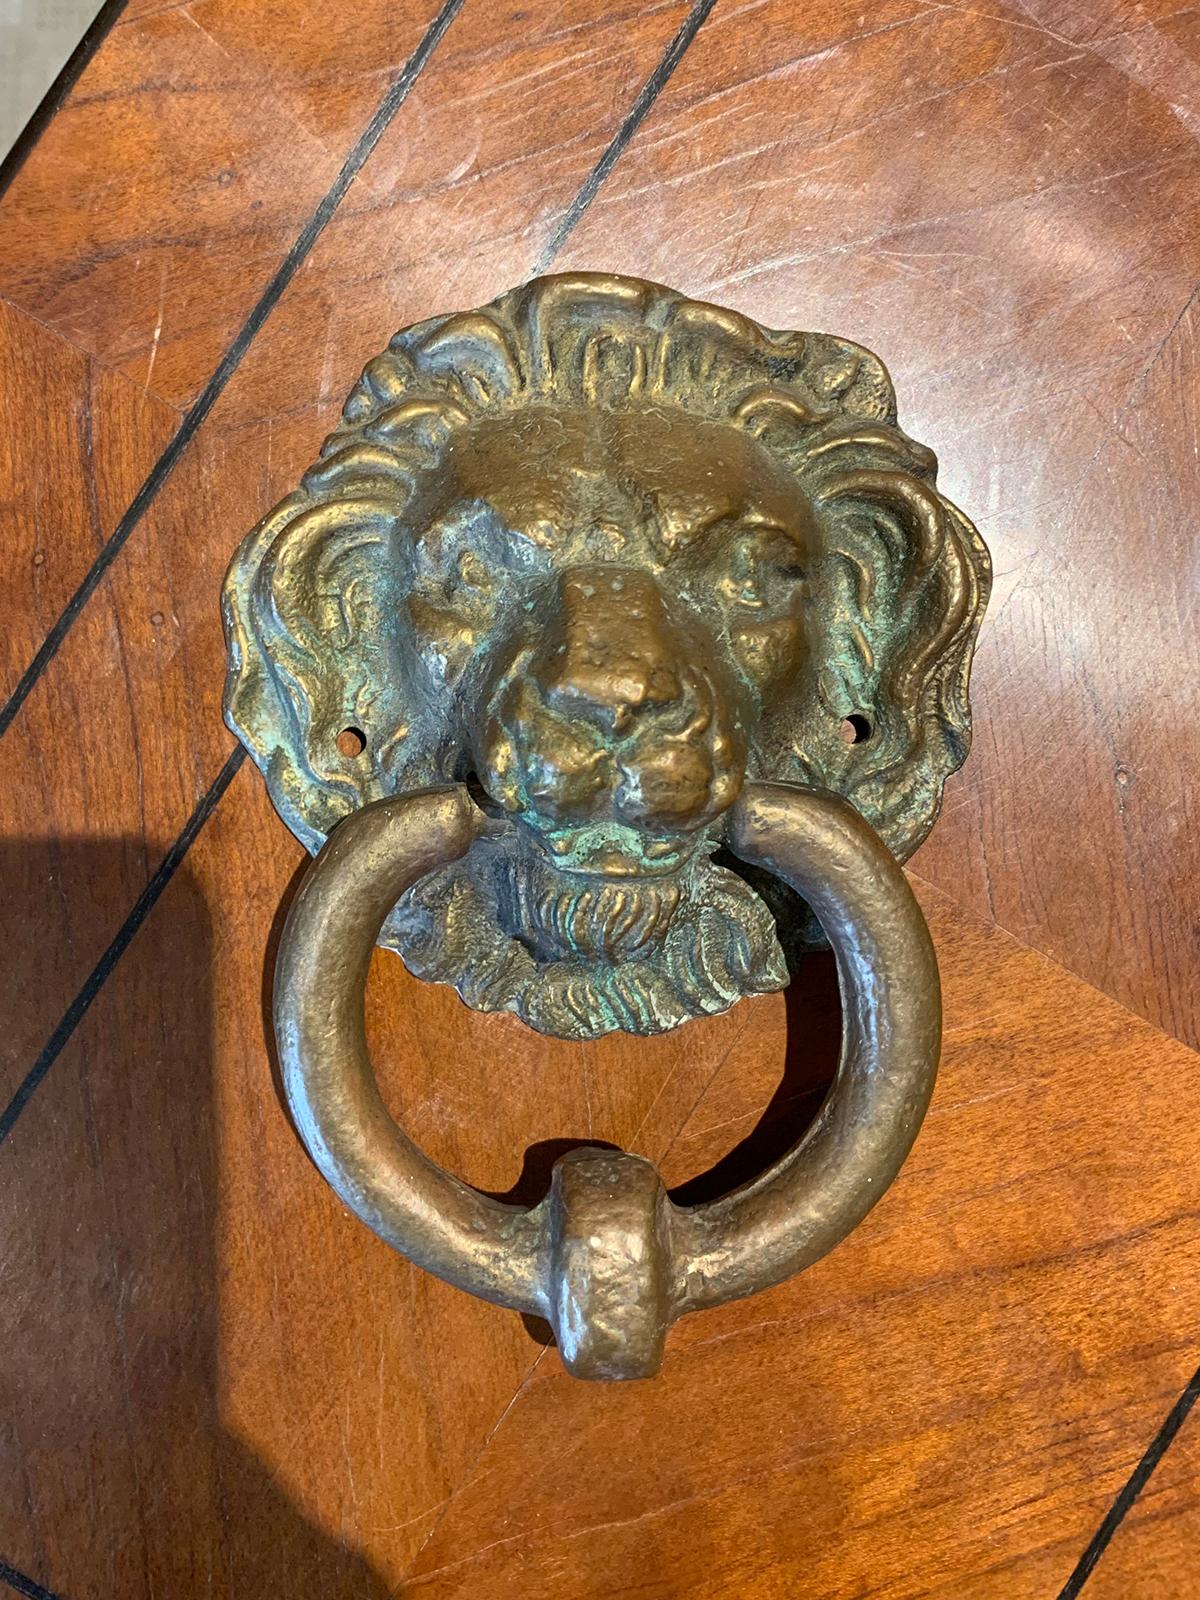 19th-20th century bronze lion head door knocker.